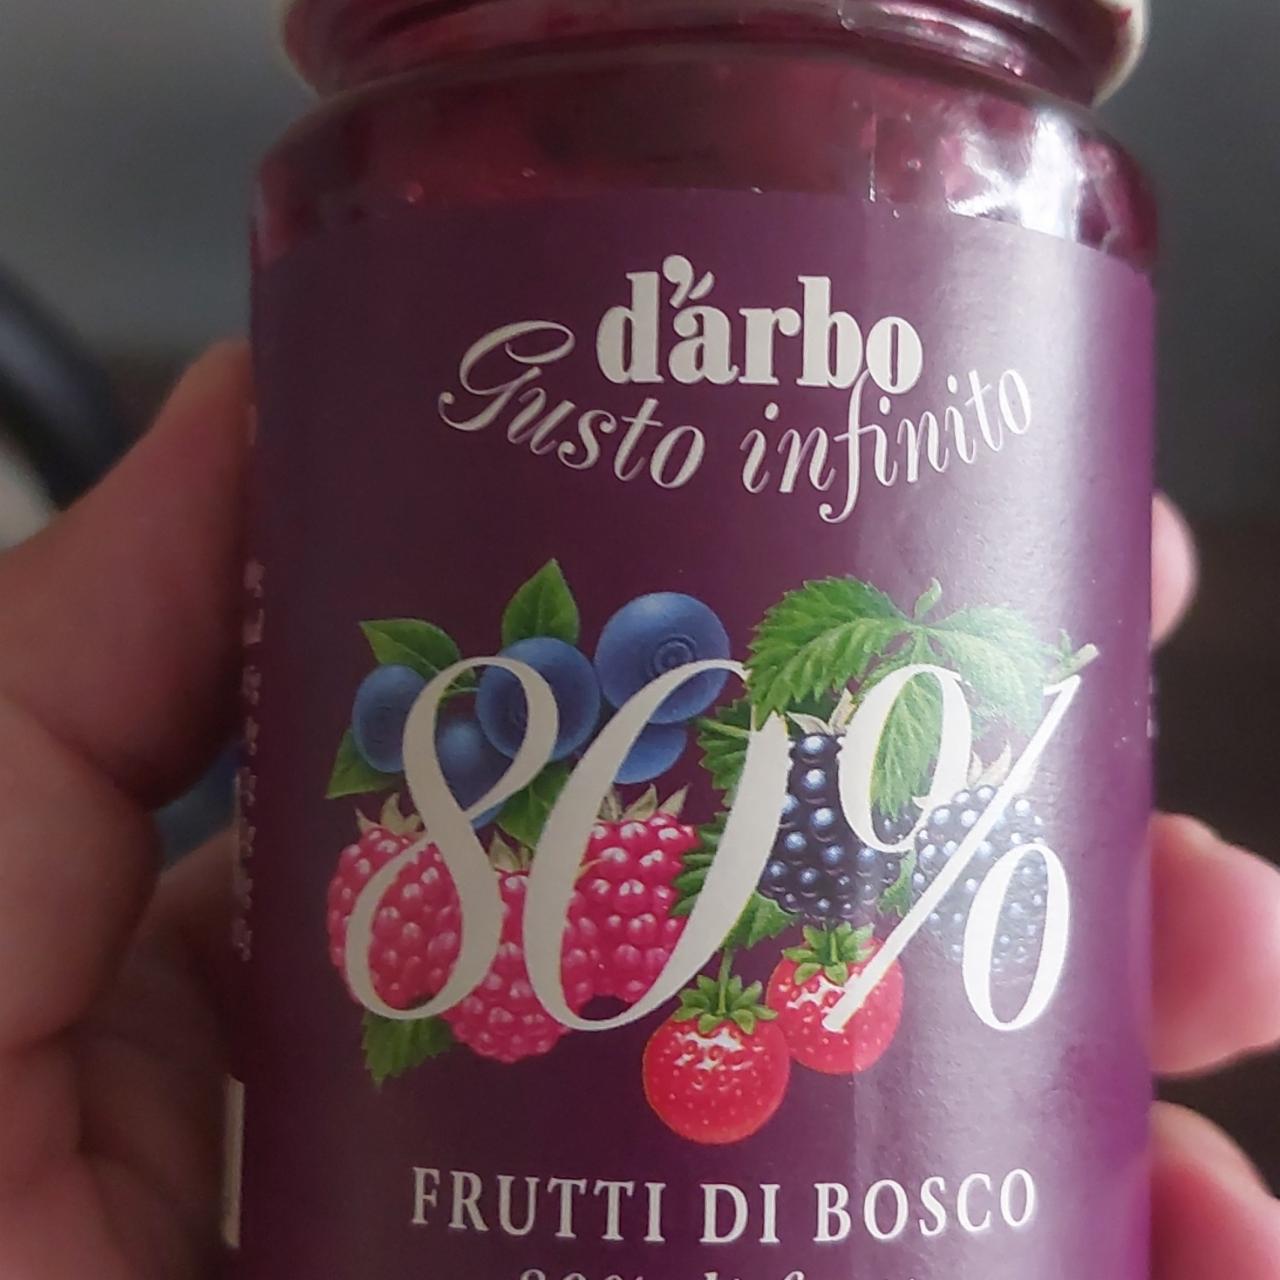 Fotografie - Frutti di bosco 80% d'arbo Gusto infinito